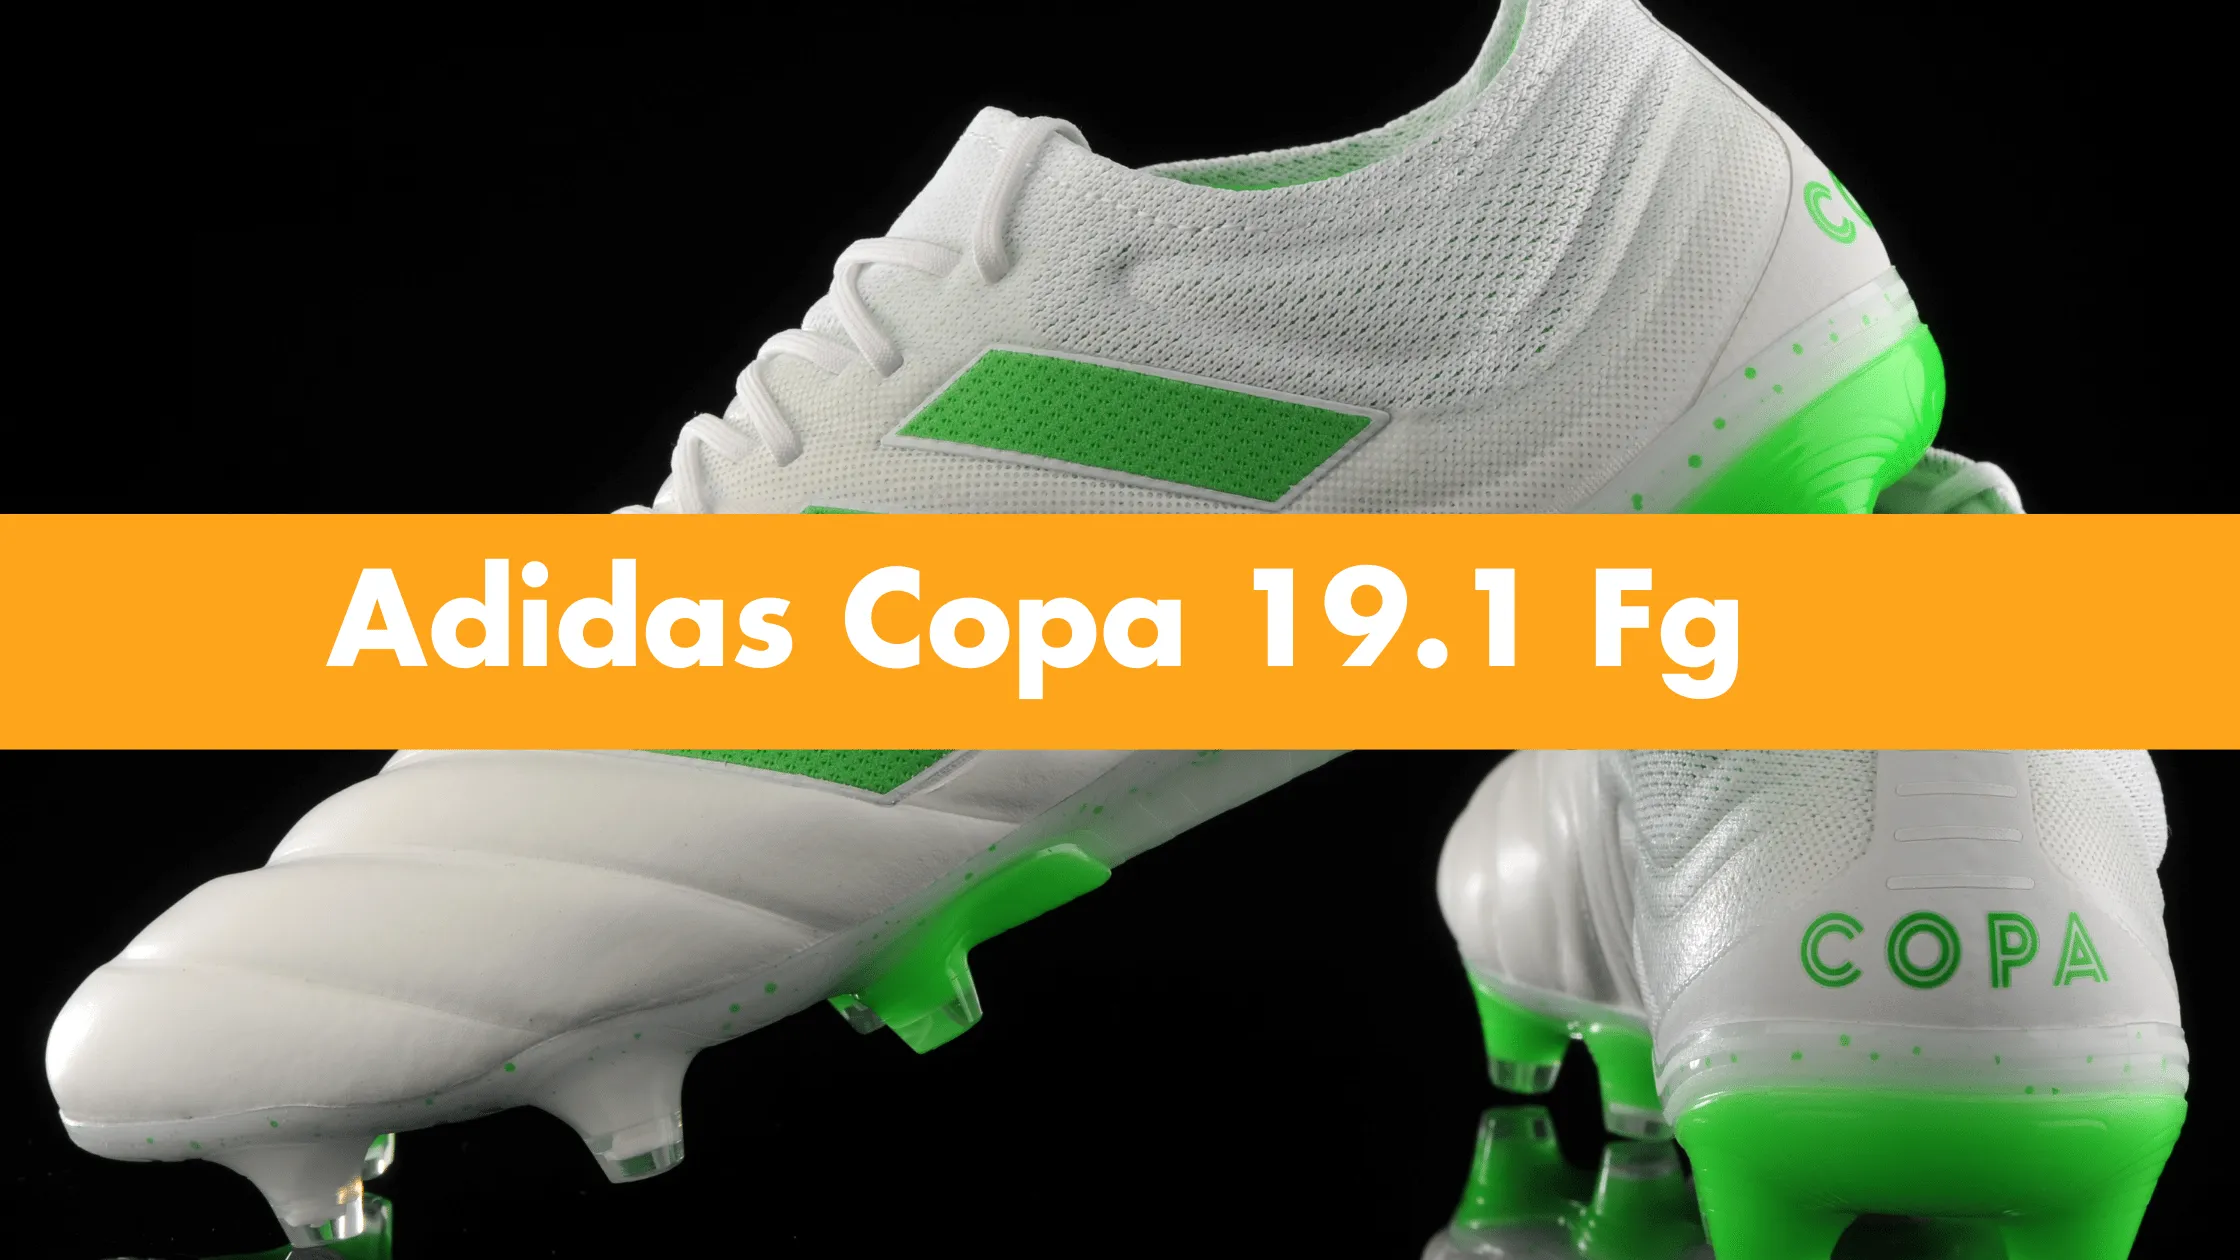 Adidas Copa 19.1 Fg